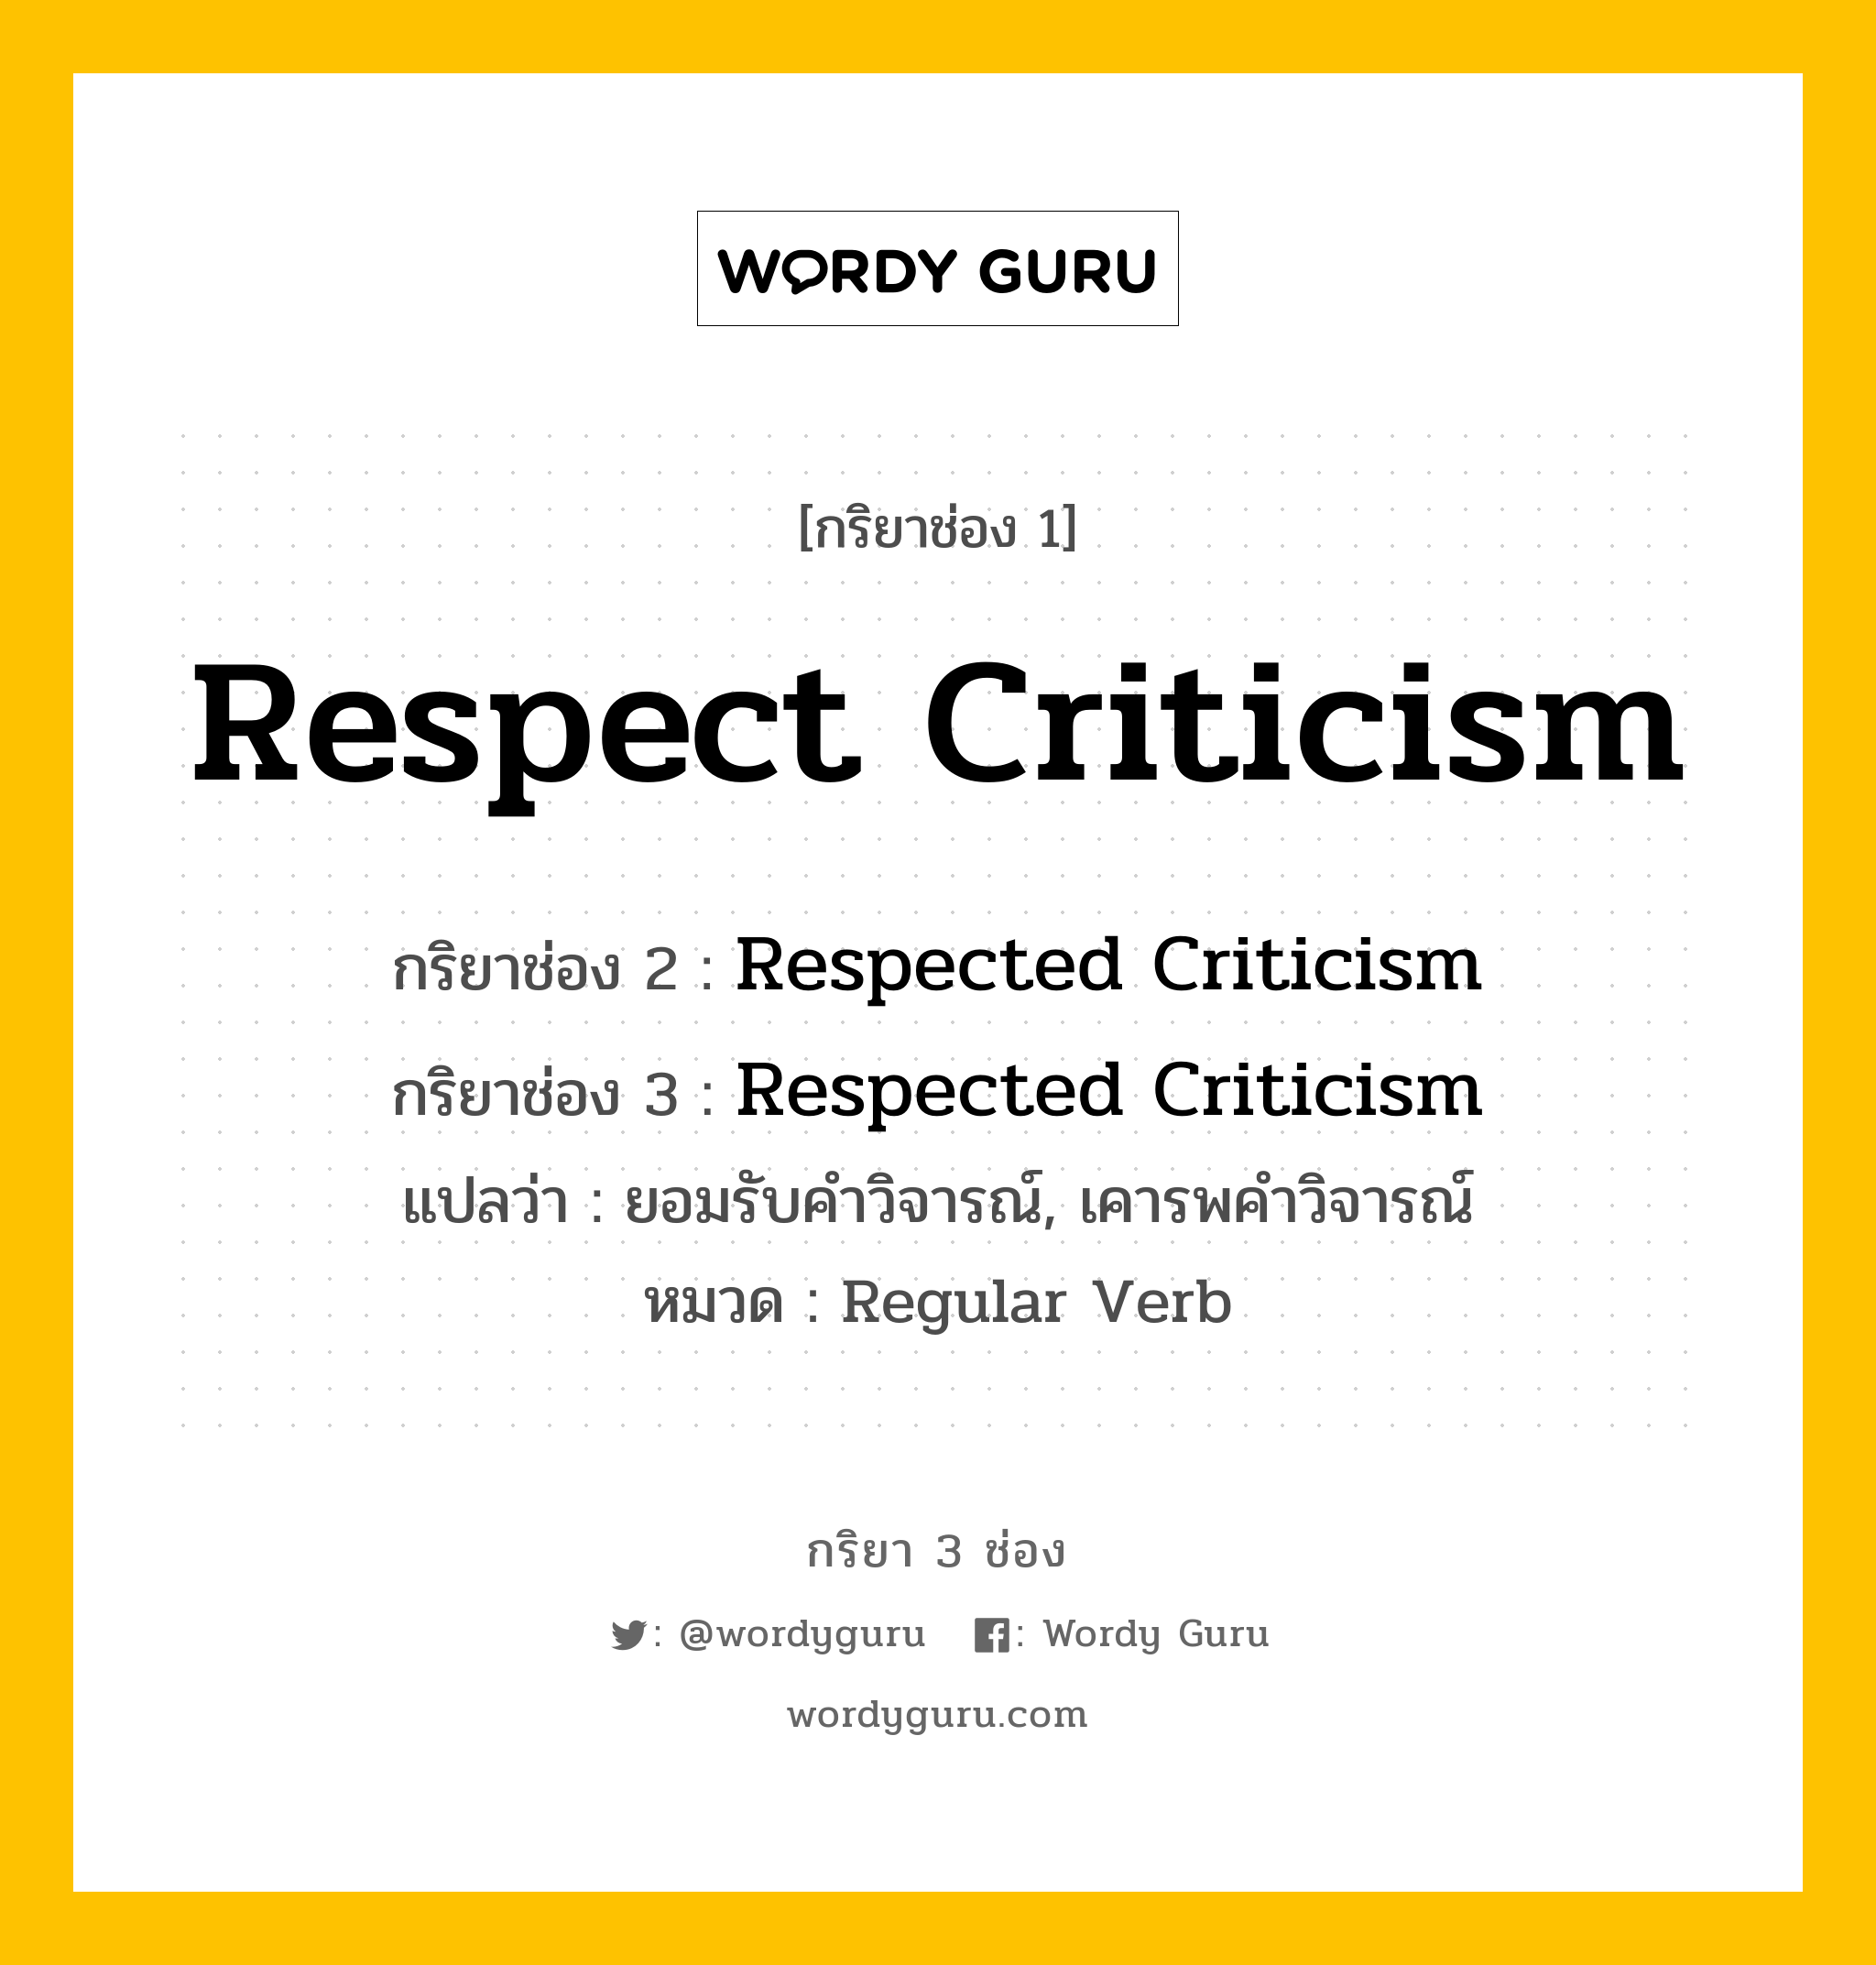 กริยา 3 ช่อง ของ Respect Criticism คืออะไร? มาดูคำอ่าน คำแปลกันเลย, กริยาช่อง 1 Respect Criticism กริยาช่อง 2 Respected Criticism กริยาช่อง 3 Respected Criticism แปลว่า ยอมรับคำวิจารณ์, เคารพคำวิจารณ์ หมวด Regular Verb หมวด Regular Verb